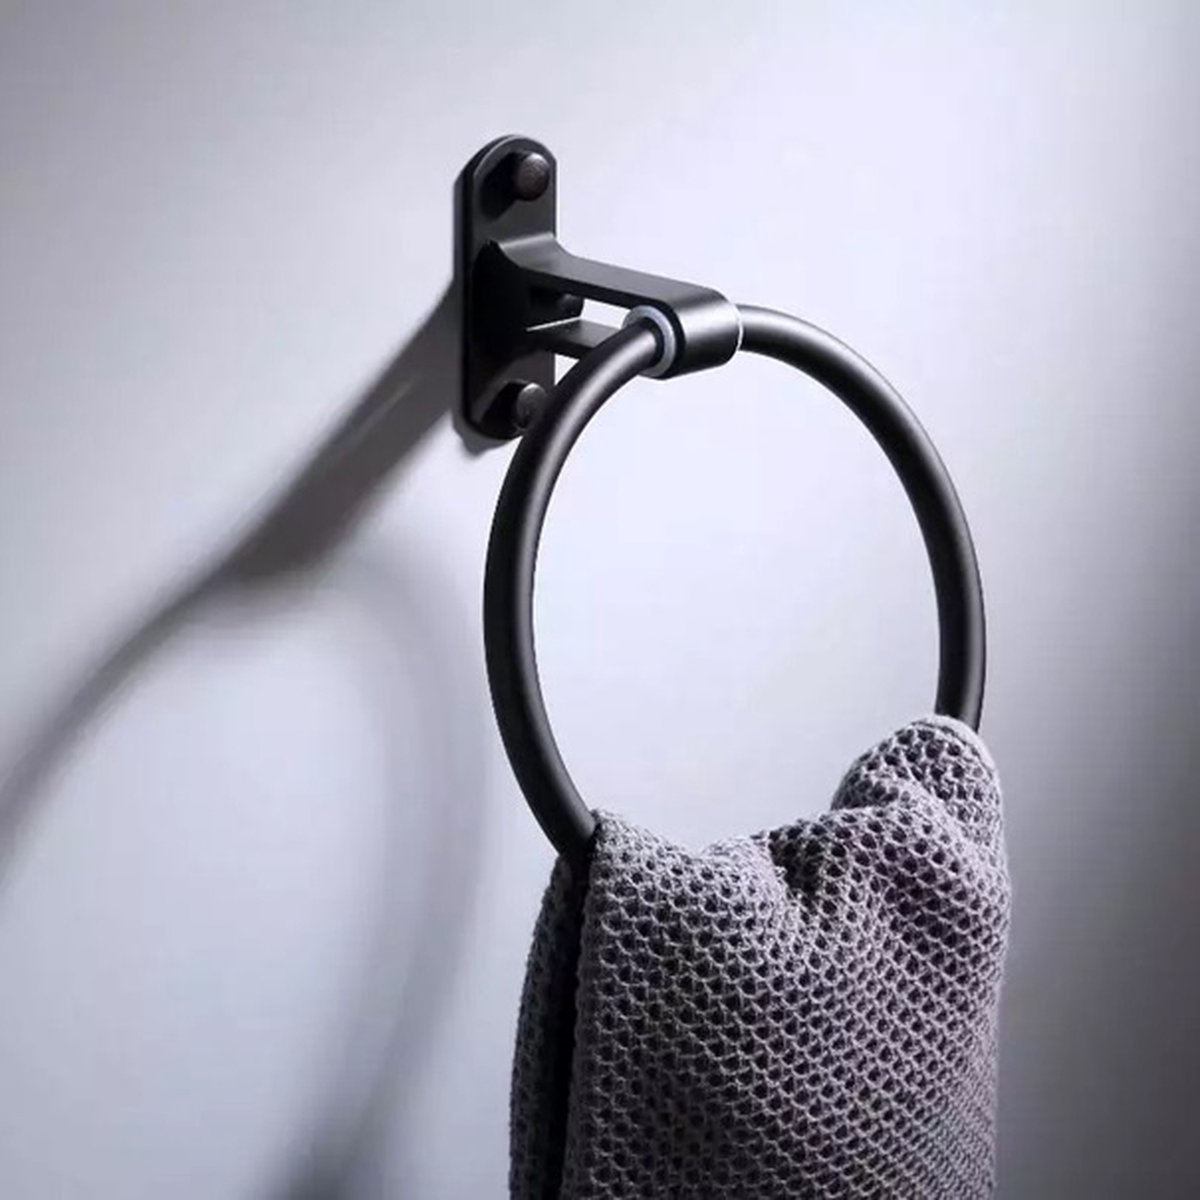 Handdoekring Zwart - Handdoekrek Zwart - Eenvoudig Te Monteren - Handdoekhouder - Handdoekhaak